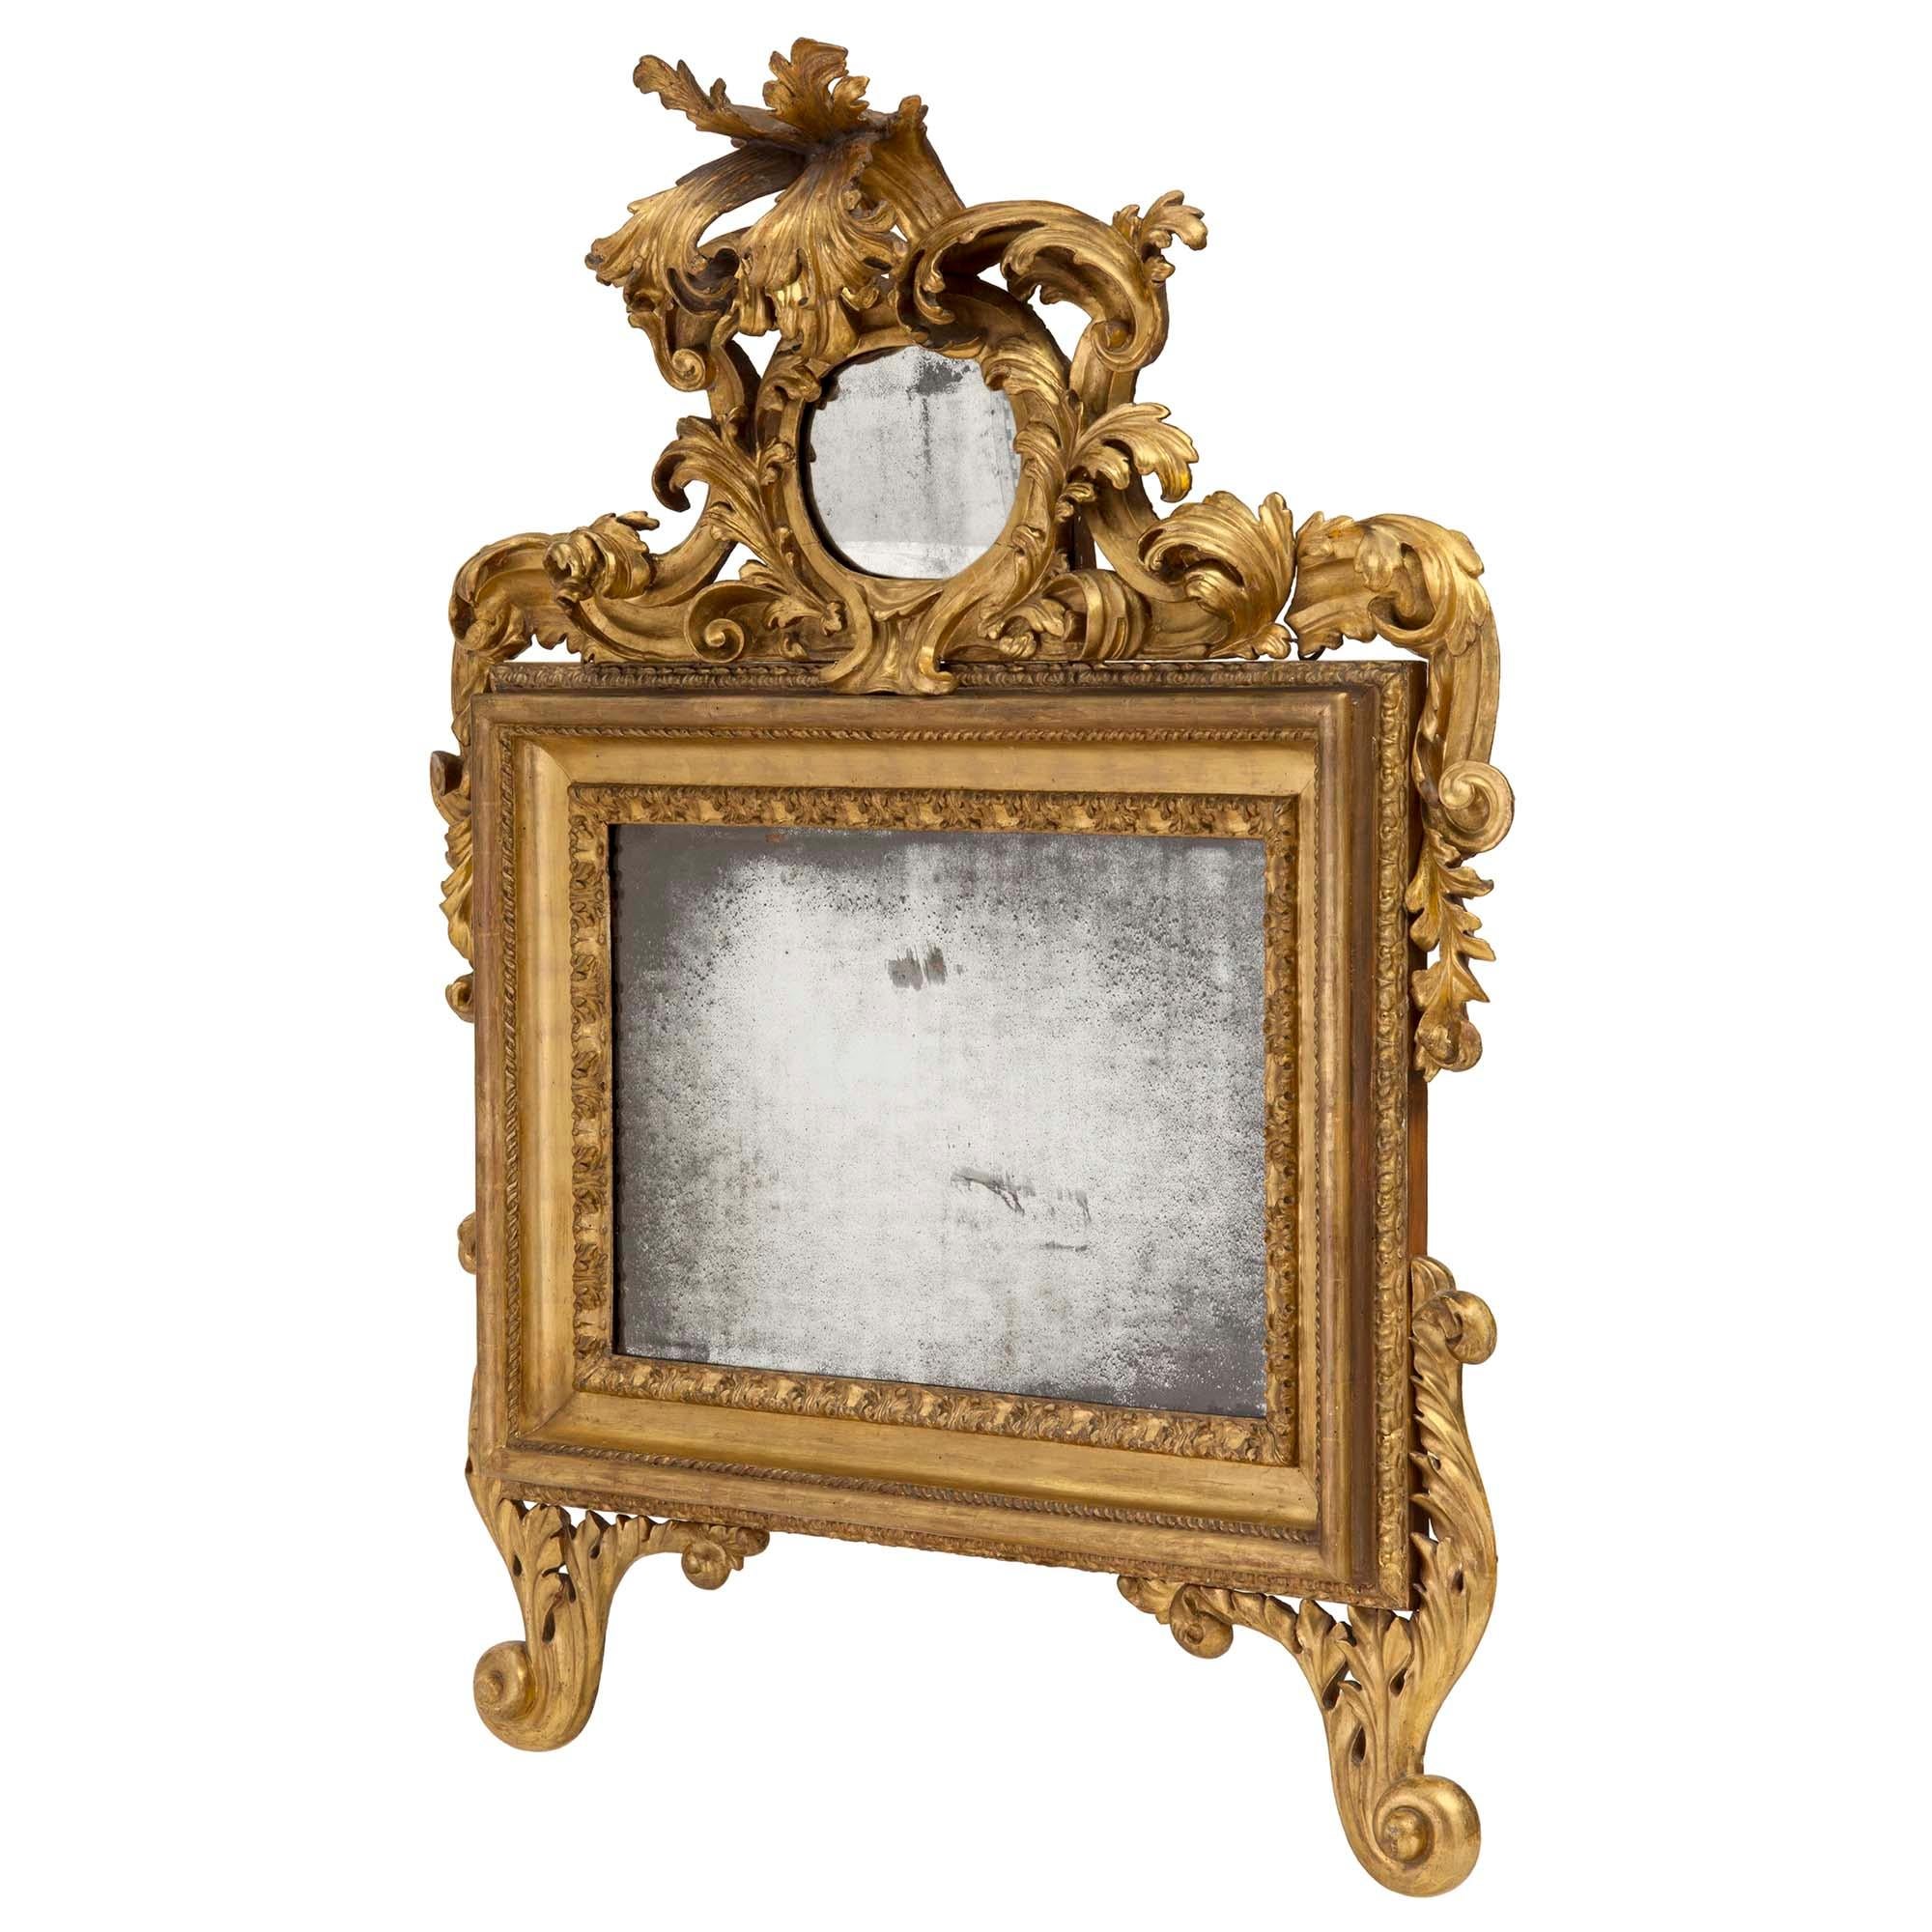 Un impressionnant miroir romain en bois doré italien du XVIIIe siècle. Le miroir est surélevé par de magnifiques pieds à volutes et à motifs de feuillages. Le miroir central d'origine est encadré d'une bordure richement sculptée de feuillages